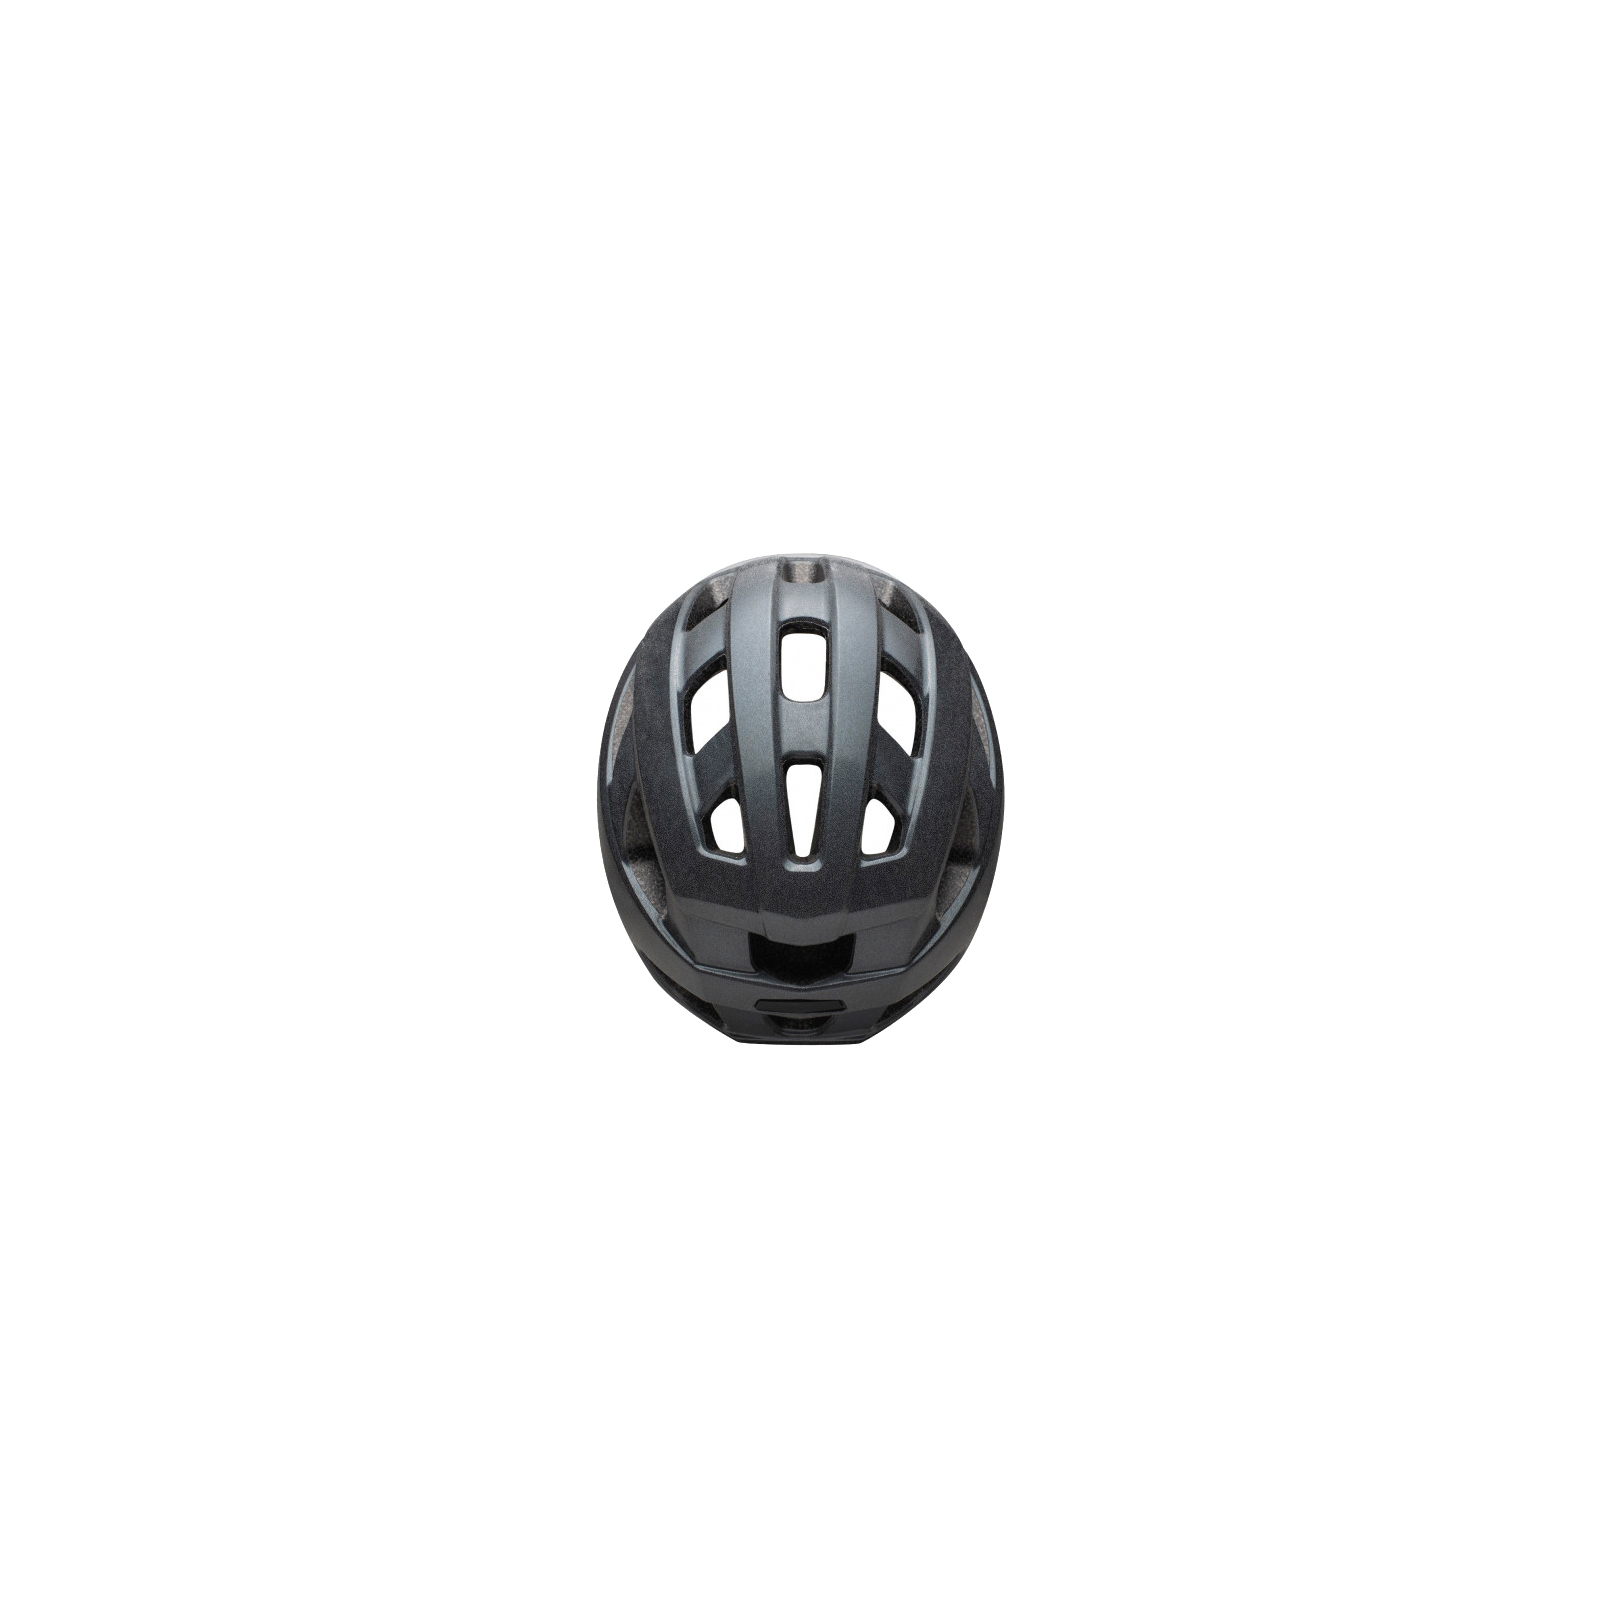 Шлем Urge Strail Світлоповертальний L/XL 59-63 см (UBP22694L) изображение 3